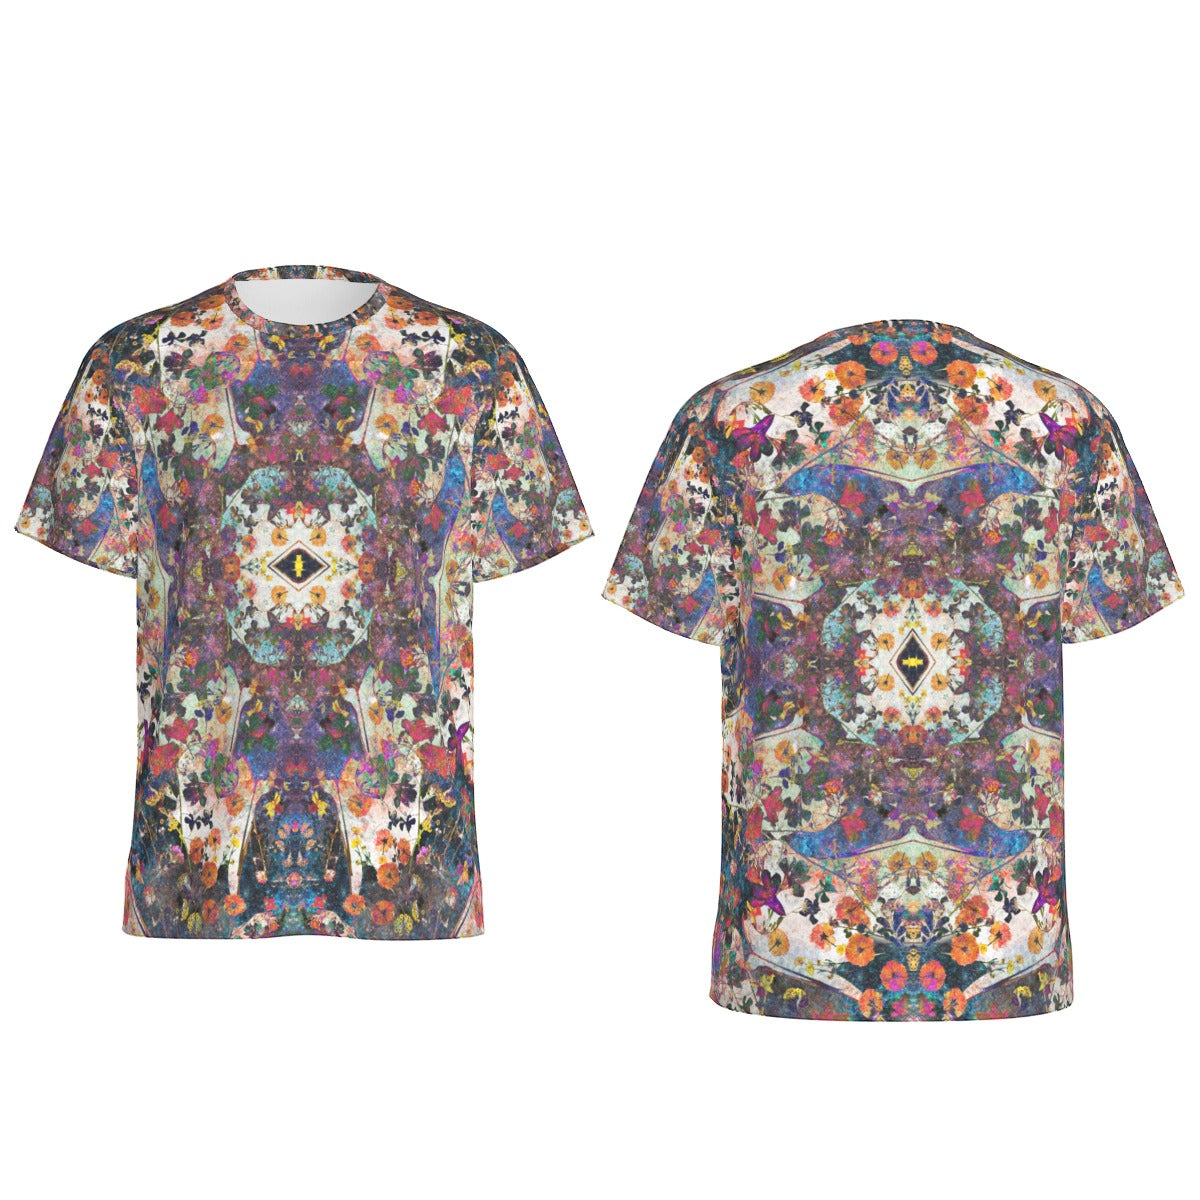 Galactic Flower Press T-Shirt